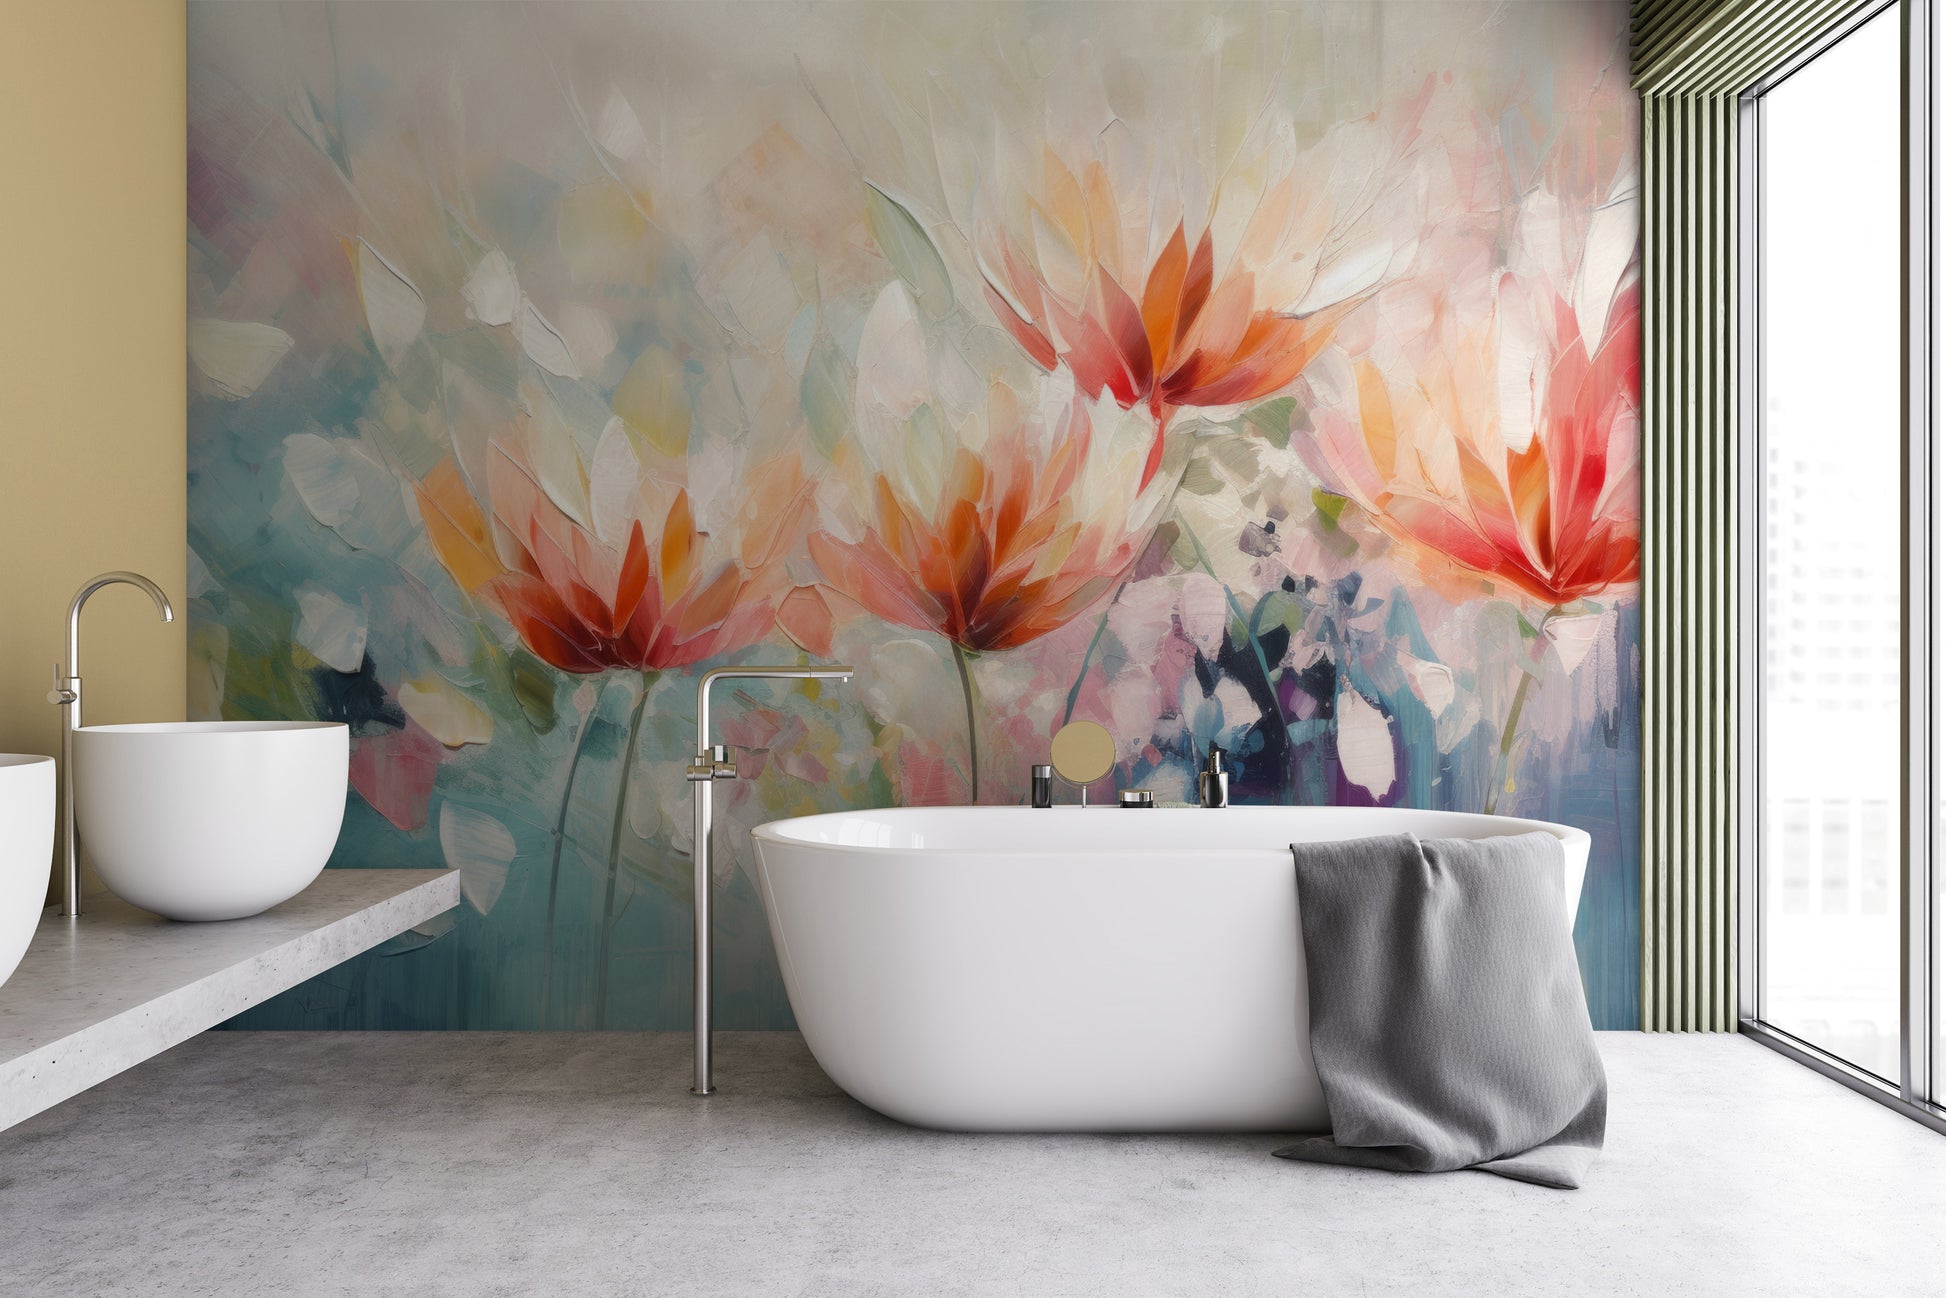 Fototapeta o nazwie Vibrant Floral Symphony użyta w aranzacji wnętrza.